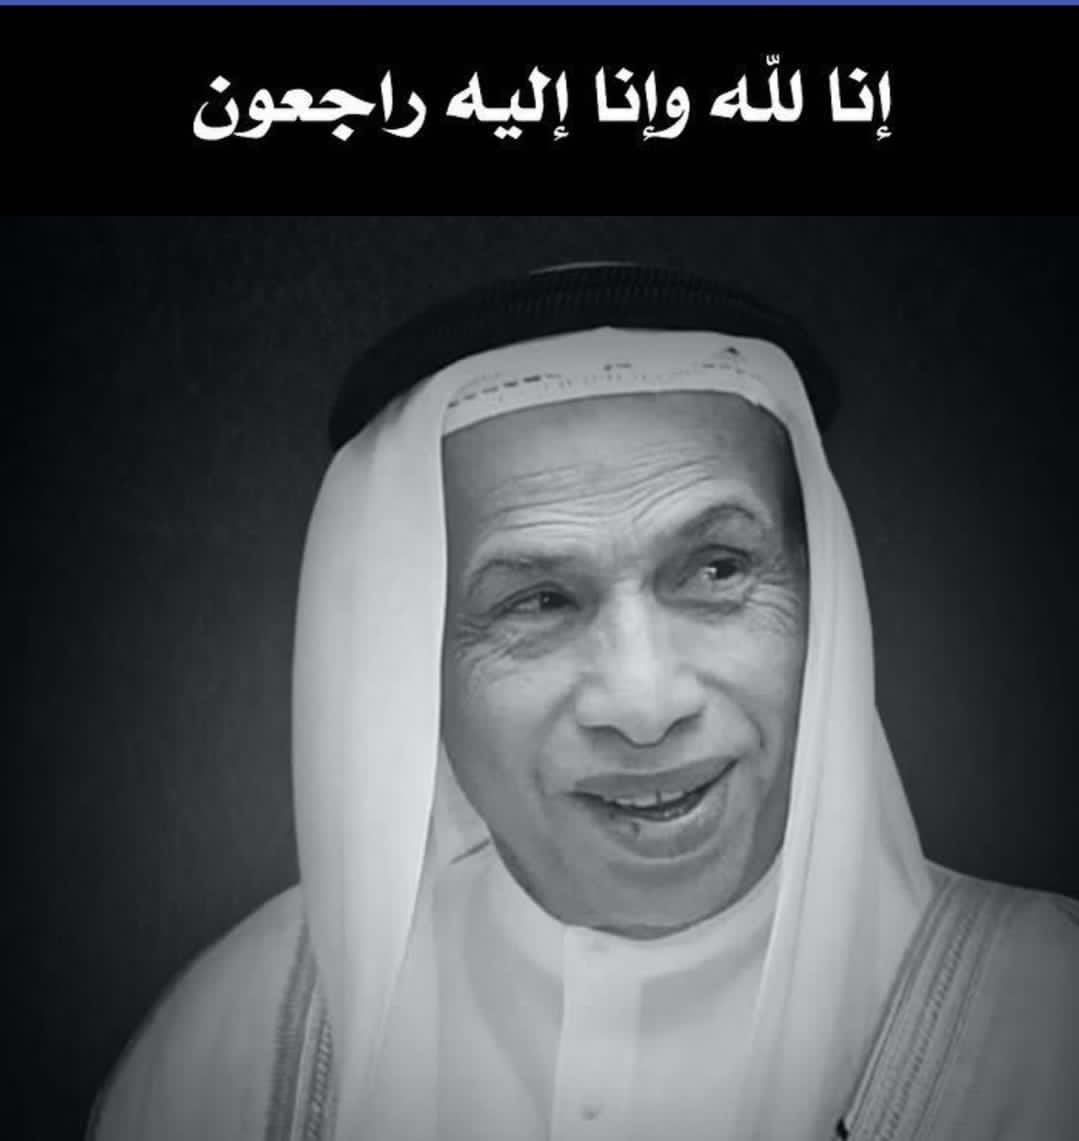 وفاة رجل الأعمال الإماراتي ماجد الفطيم الصحافة نت